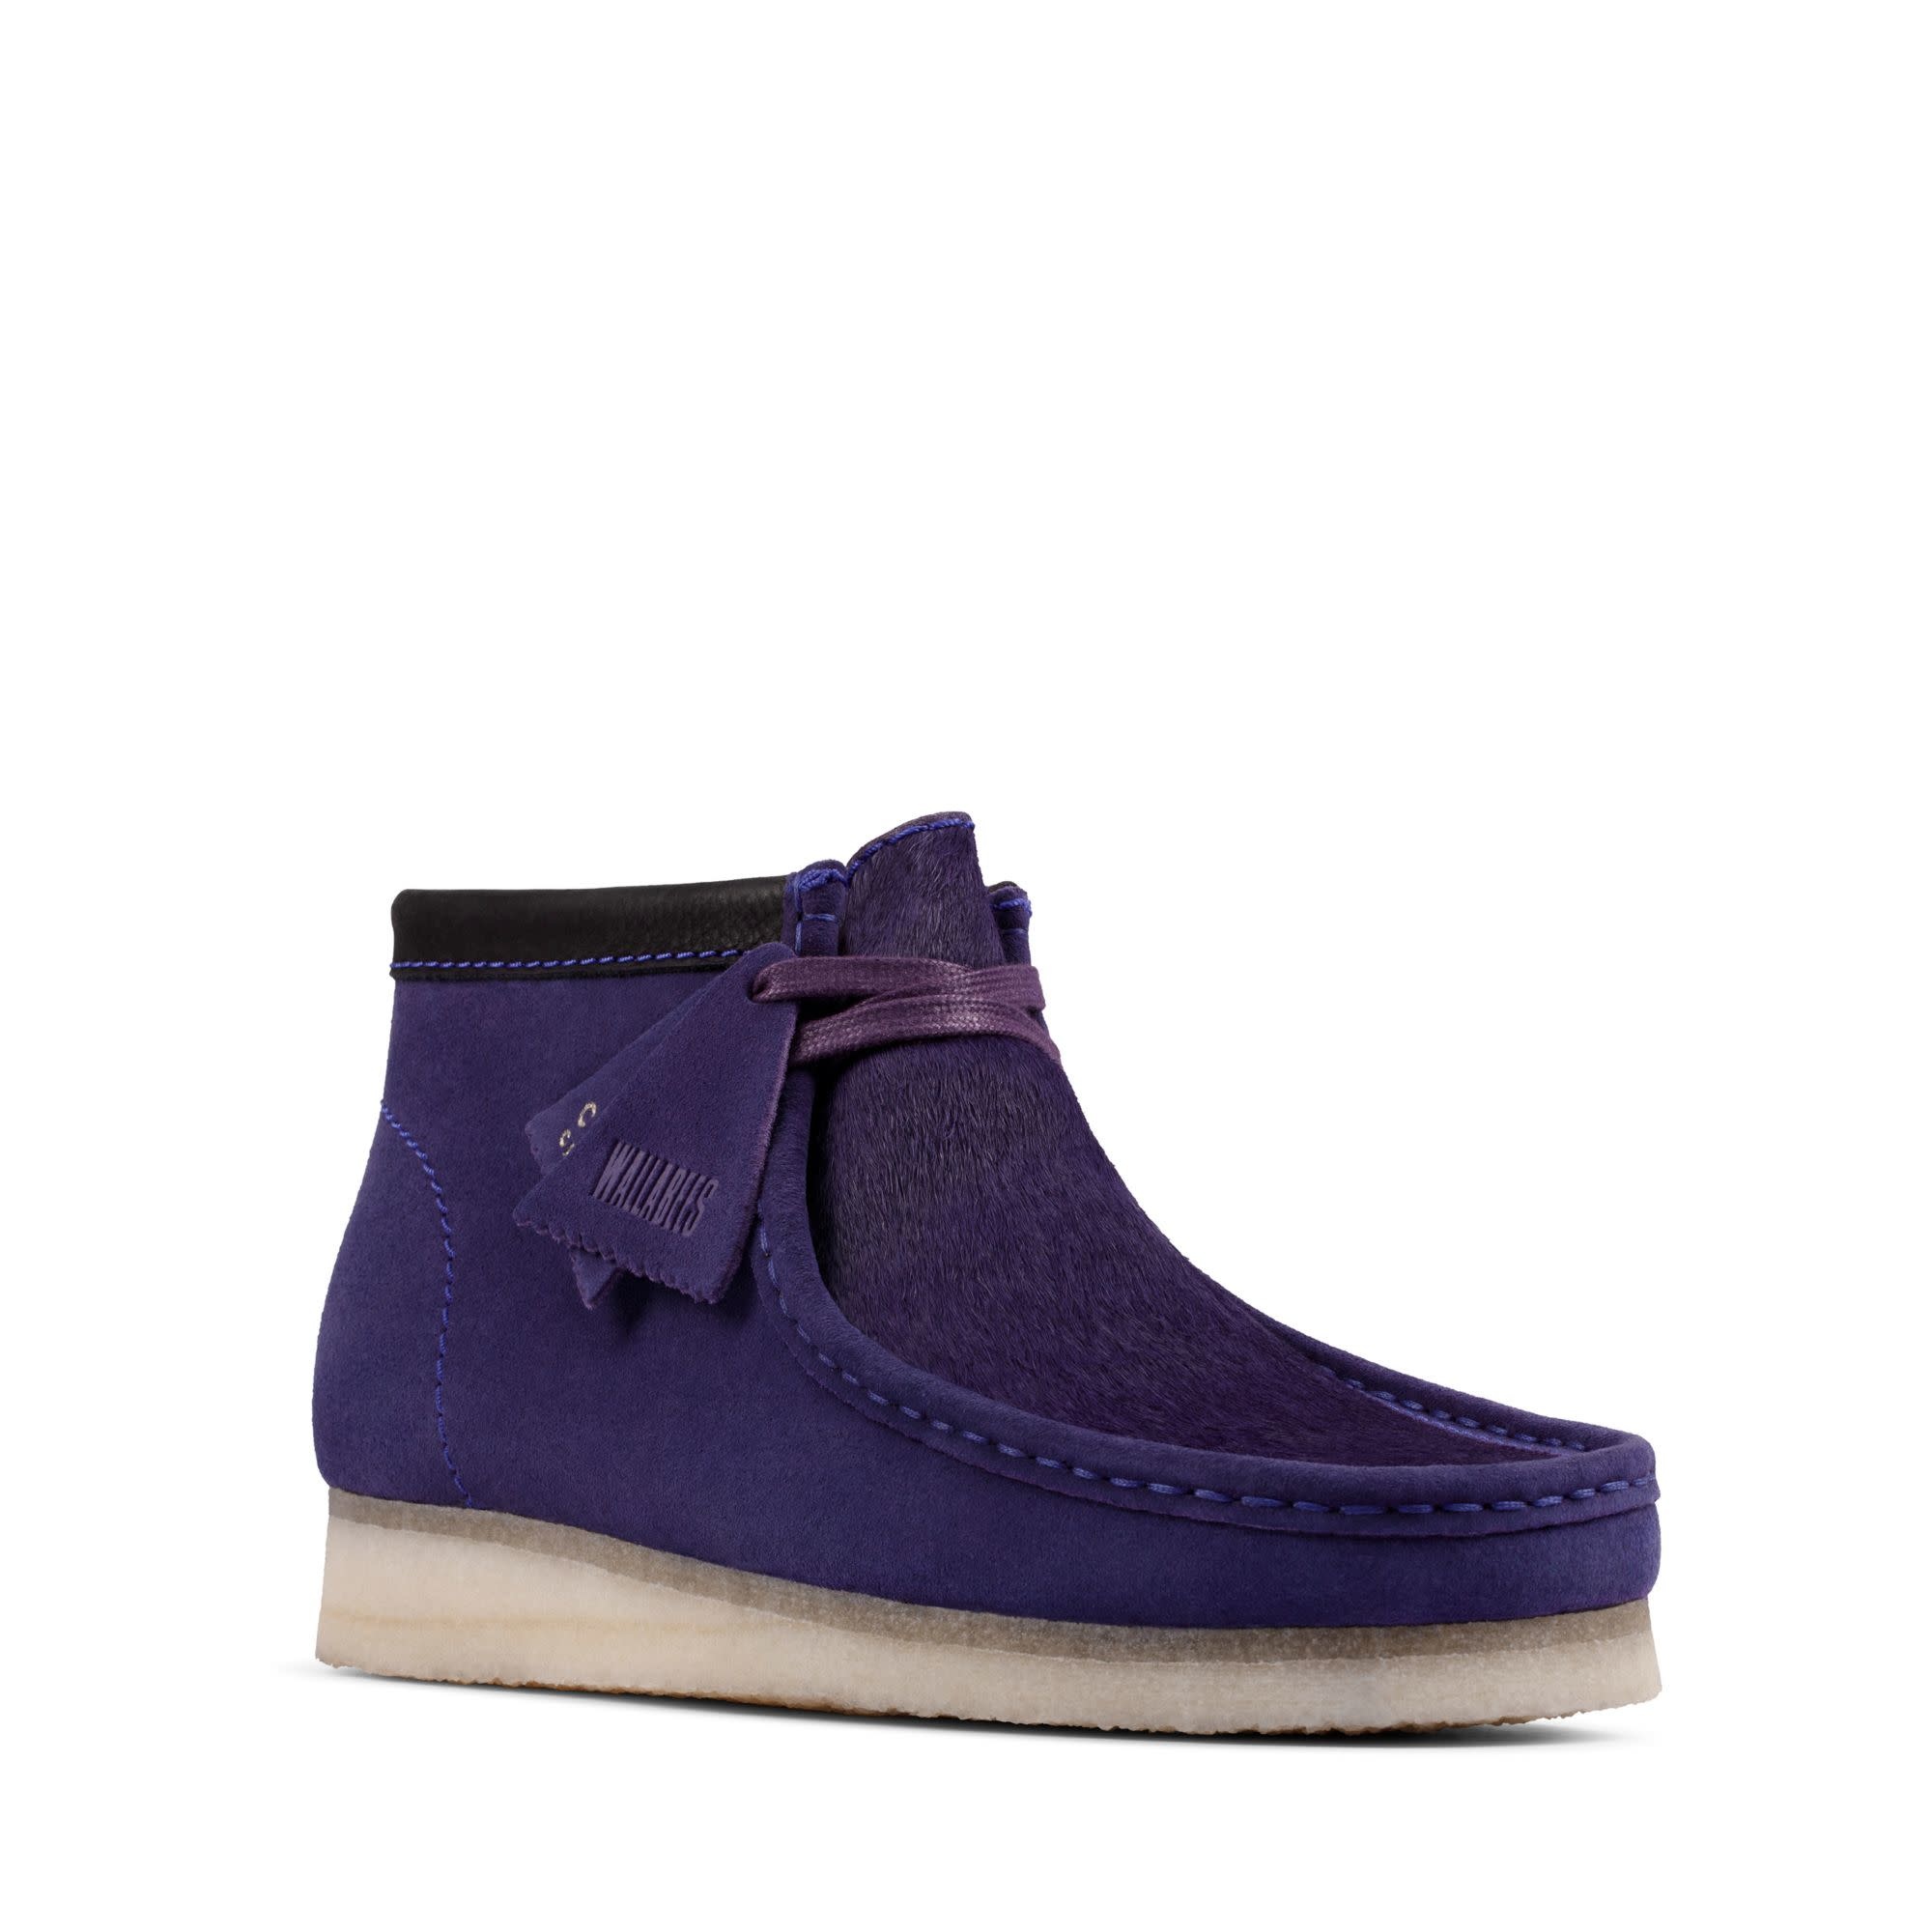 Wallabee Boot Purple Interest $219.99 